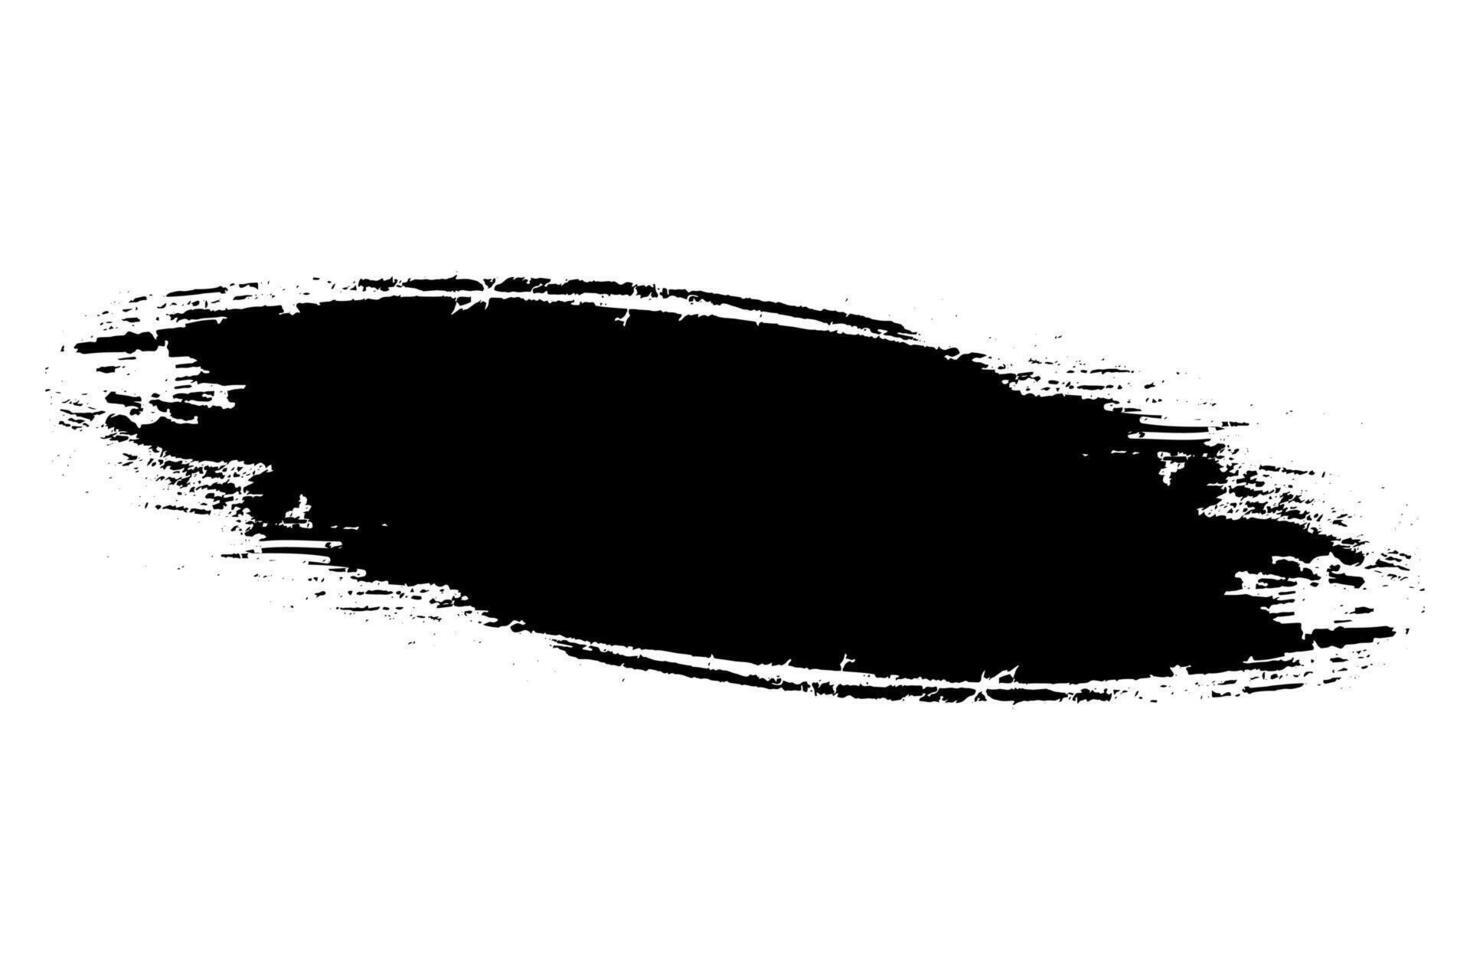 schwarz Tinte Spritzer, ein spritzt Jahrgang Textur schwarz und Weiß einstellen von Flecken, Spritzer, Bürste Schlaganfälle Spritzen, einstellen von Aquarell Bürste Schlaganfälle, schwarz und Weiß Farbe Schlaganfall Bürste auf Weiß vektor